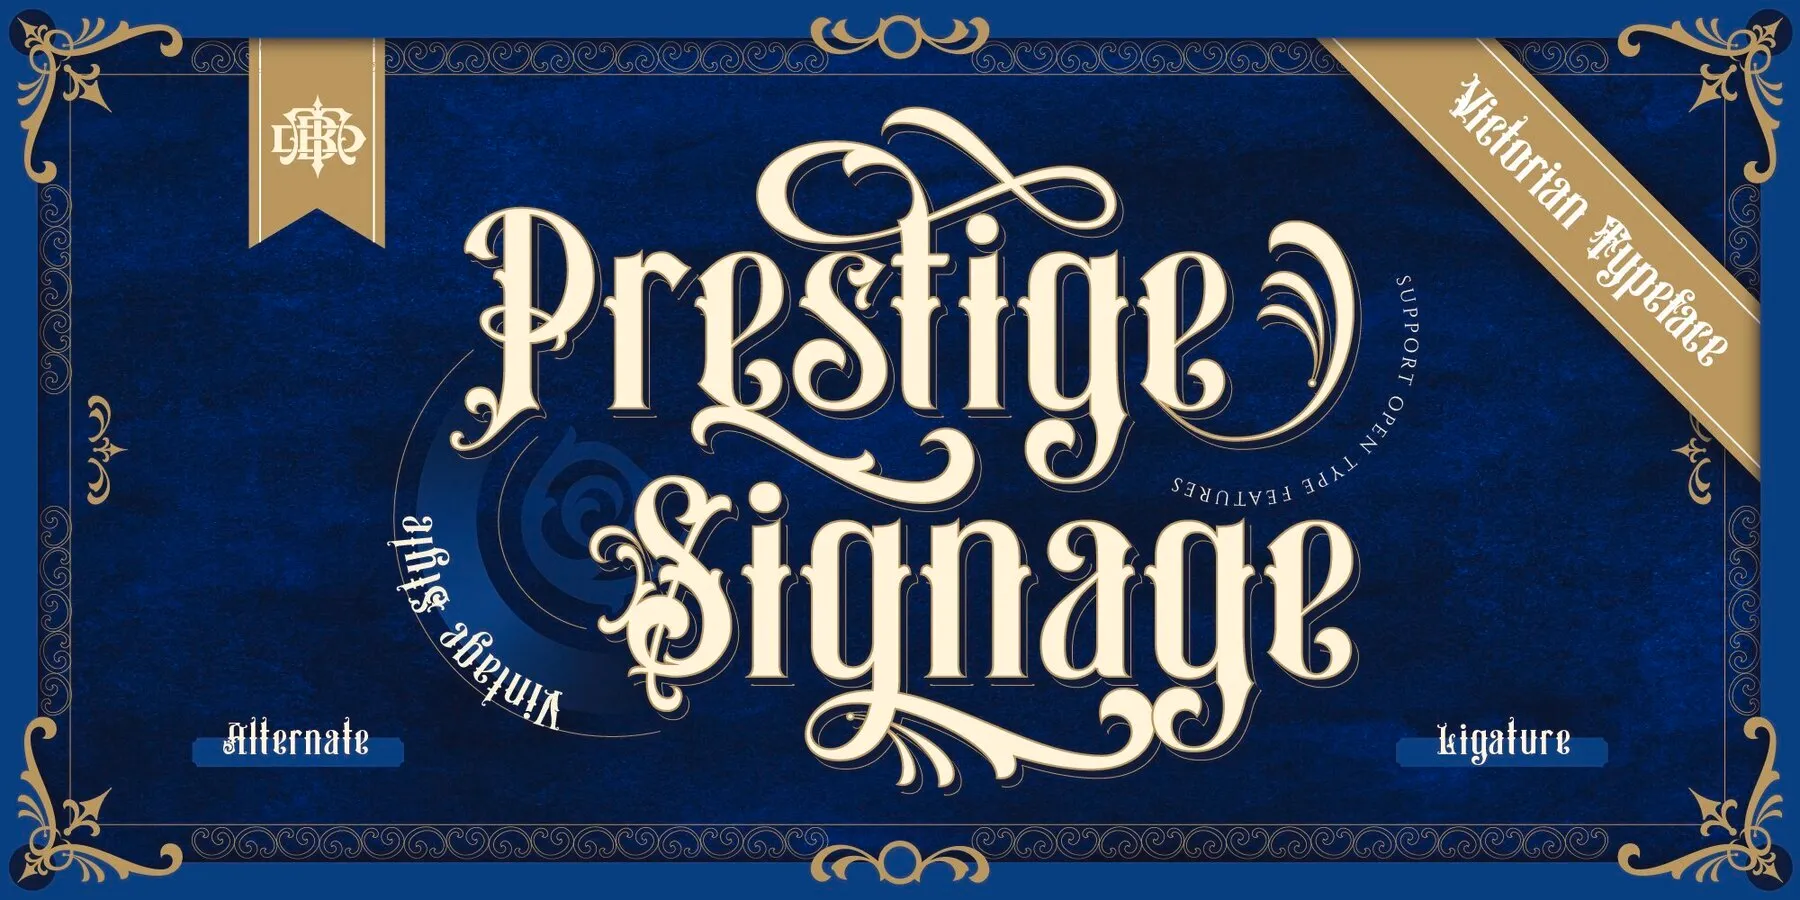 Prestige Signage